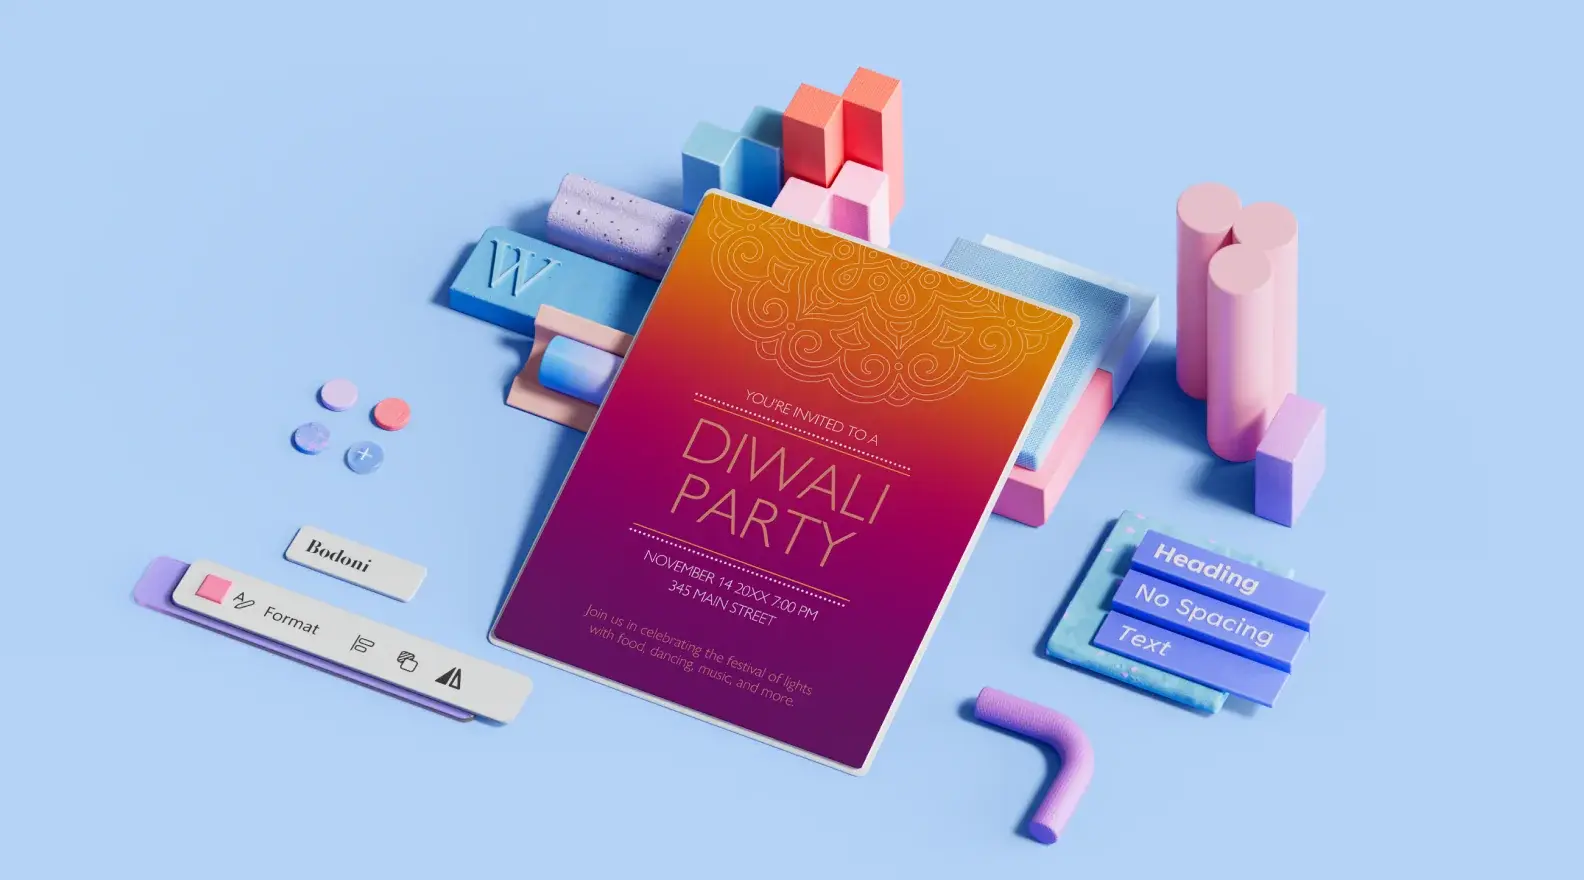 Шаблон за листовка за парти по случай Дивали, заобиколен от 3D елементи на дизайна